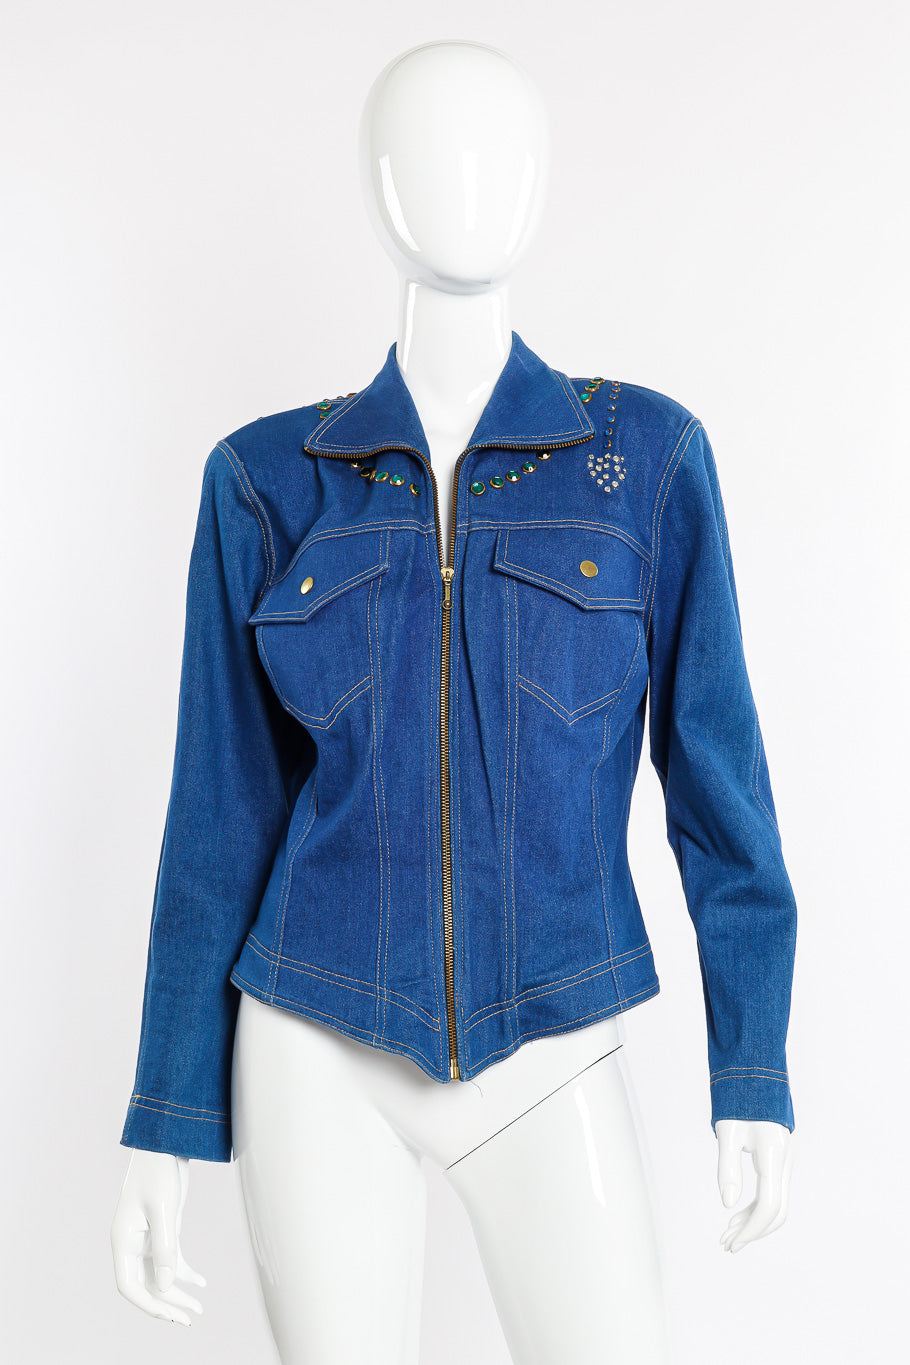 Vintage Lillie Rubin Crystal Studded Denim Jacket front view on mannequin @Recessla